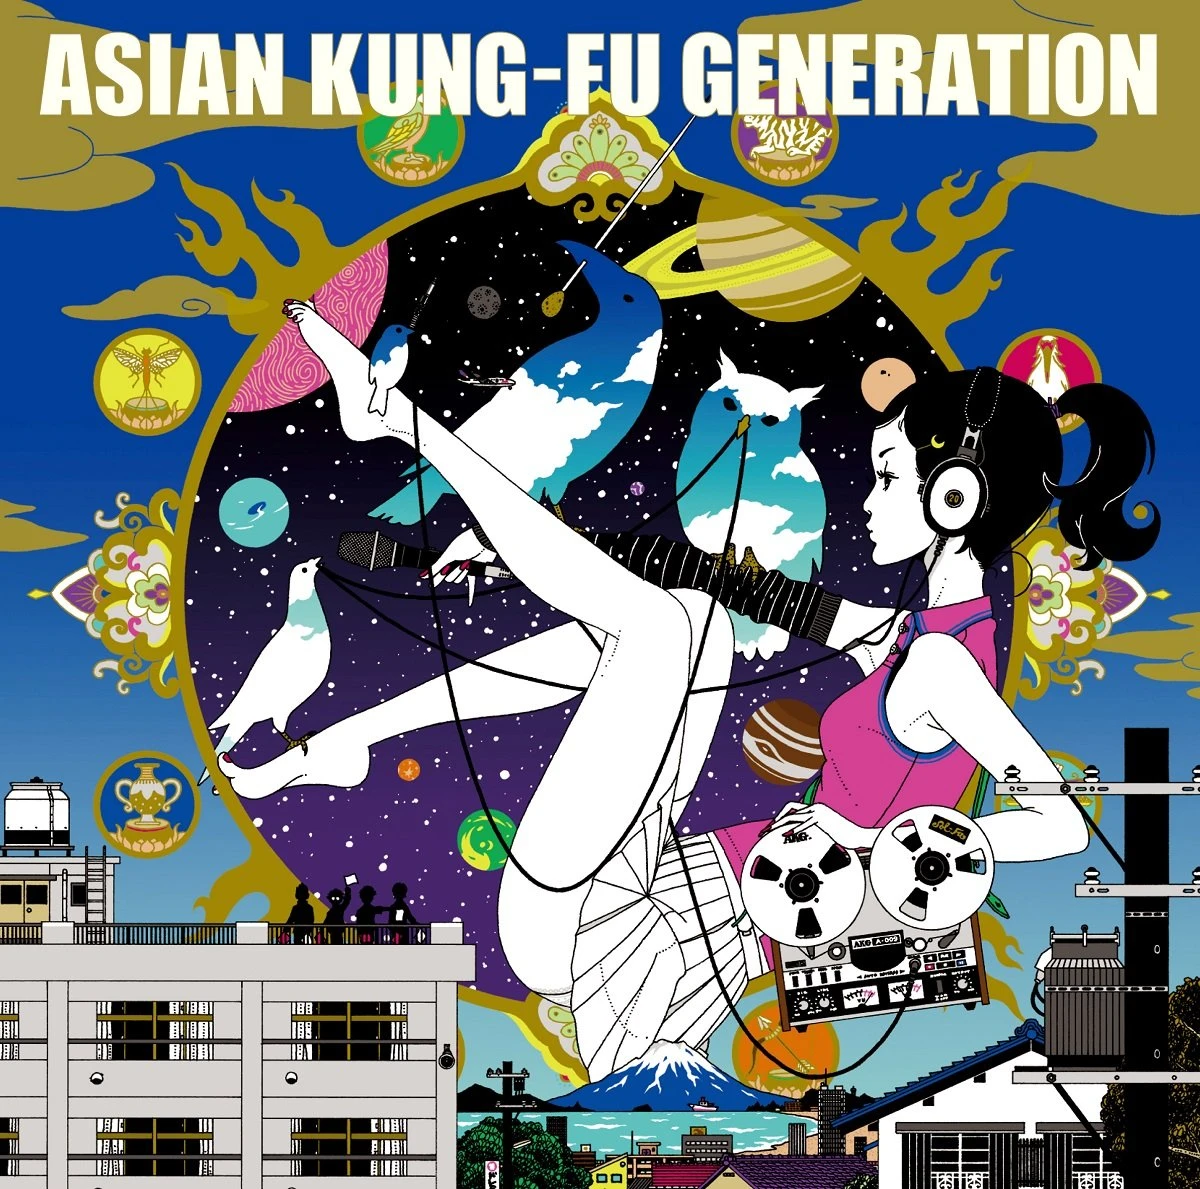 ASIAN KUNG-FU GENERATION『ソルファ』再レコーディング盤 通常盤ジャケット